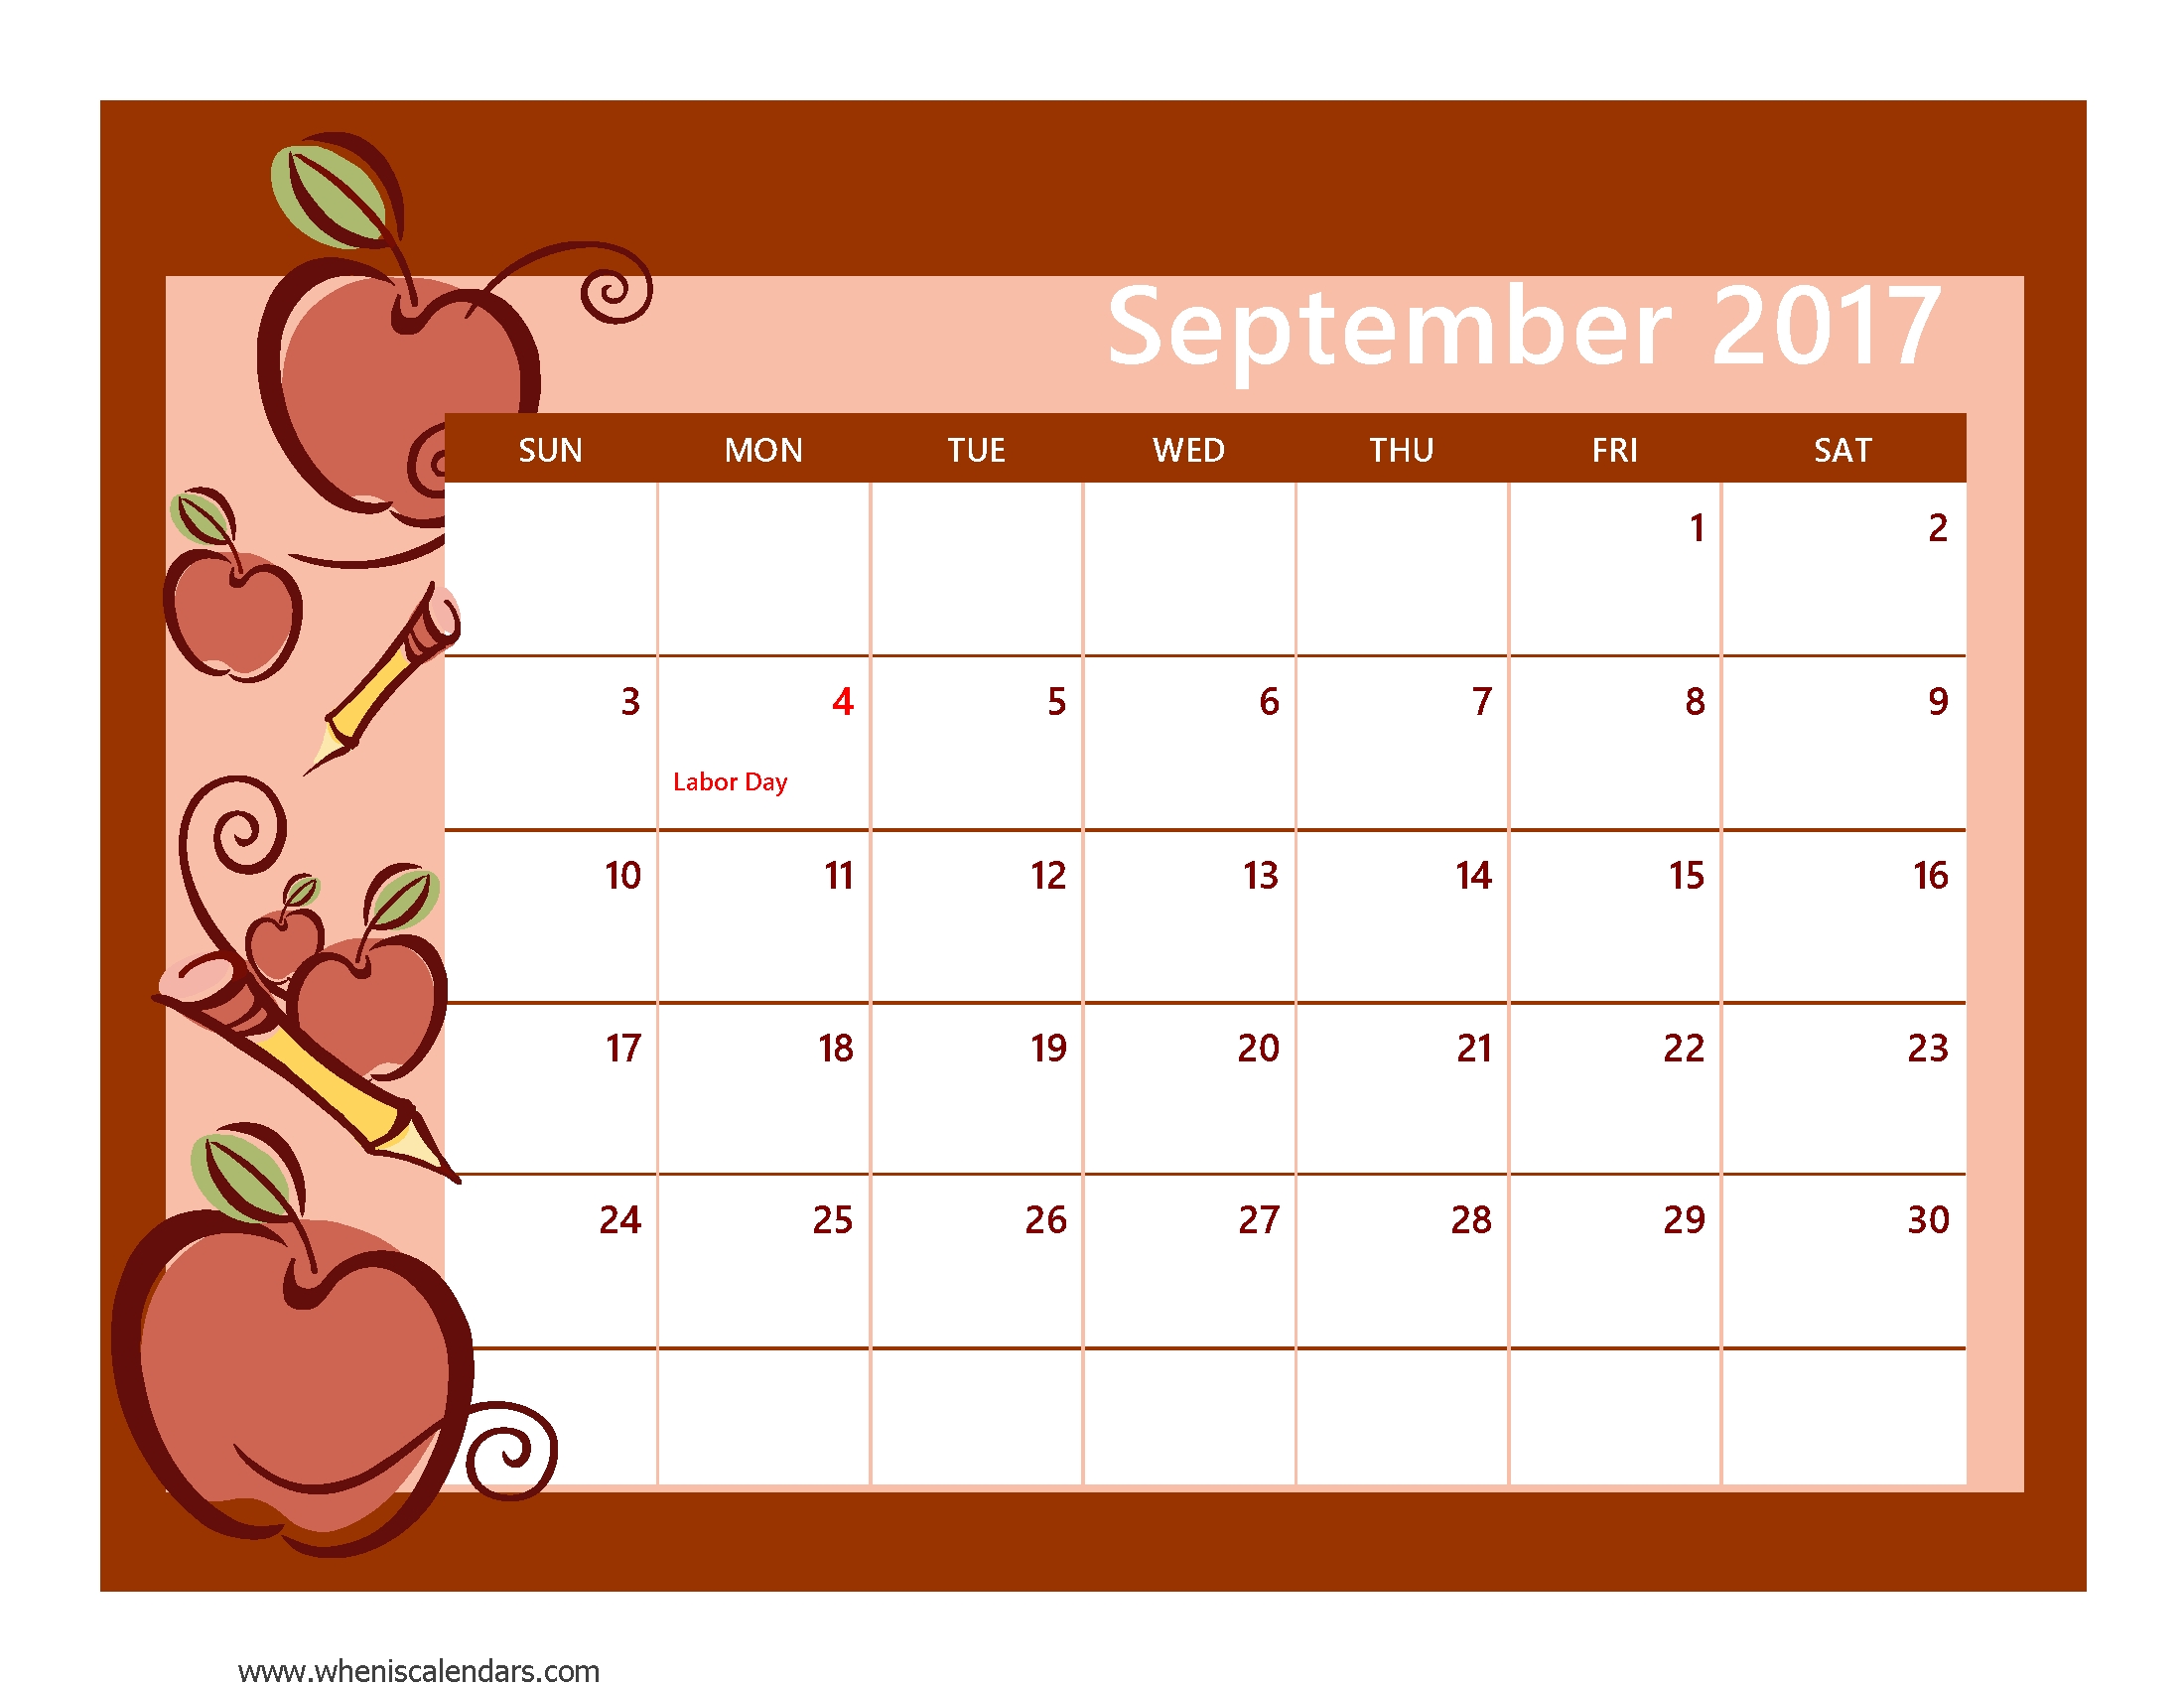 2017 September Calendars For Prints | Calendar Templates inside Large Printable September Calendar With Holidays